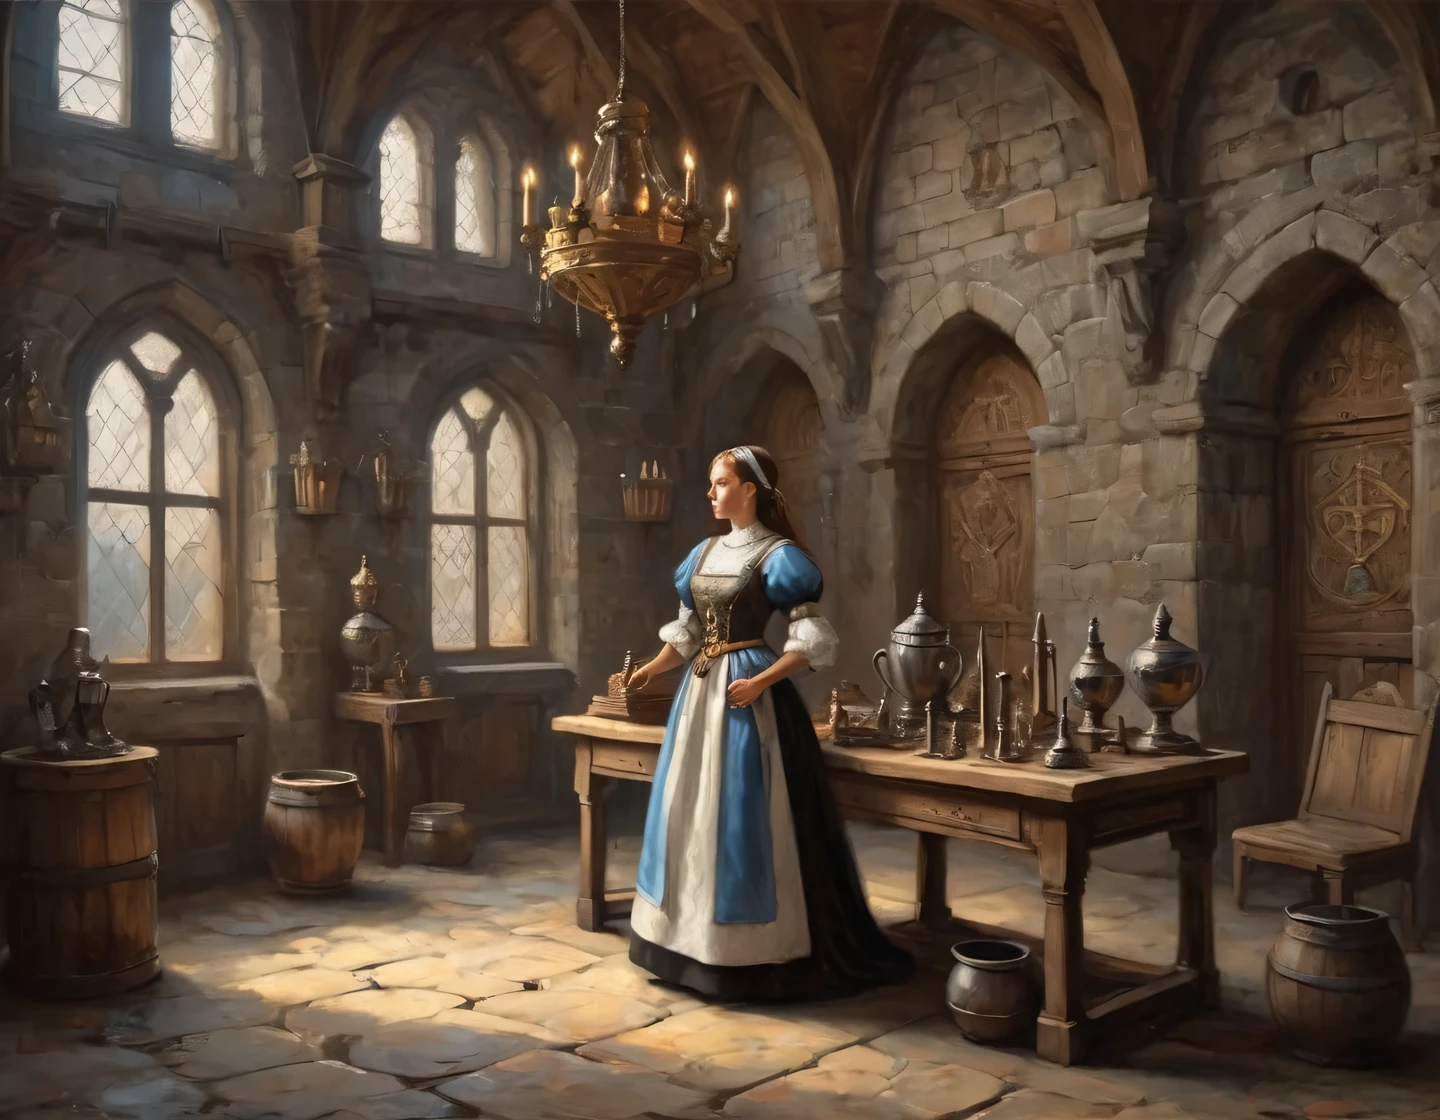 Ein altes Foto, ein Cyborg-Mädchen in einem Dienstmädchen-Outfit baut in der Halle einer mittelalterlichen Burg, mittelalterliche Einrichtung, Trophäen und Waffen an den Wänden, Heraldik, Realistisch